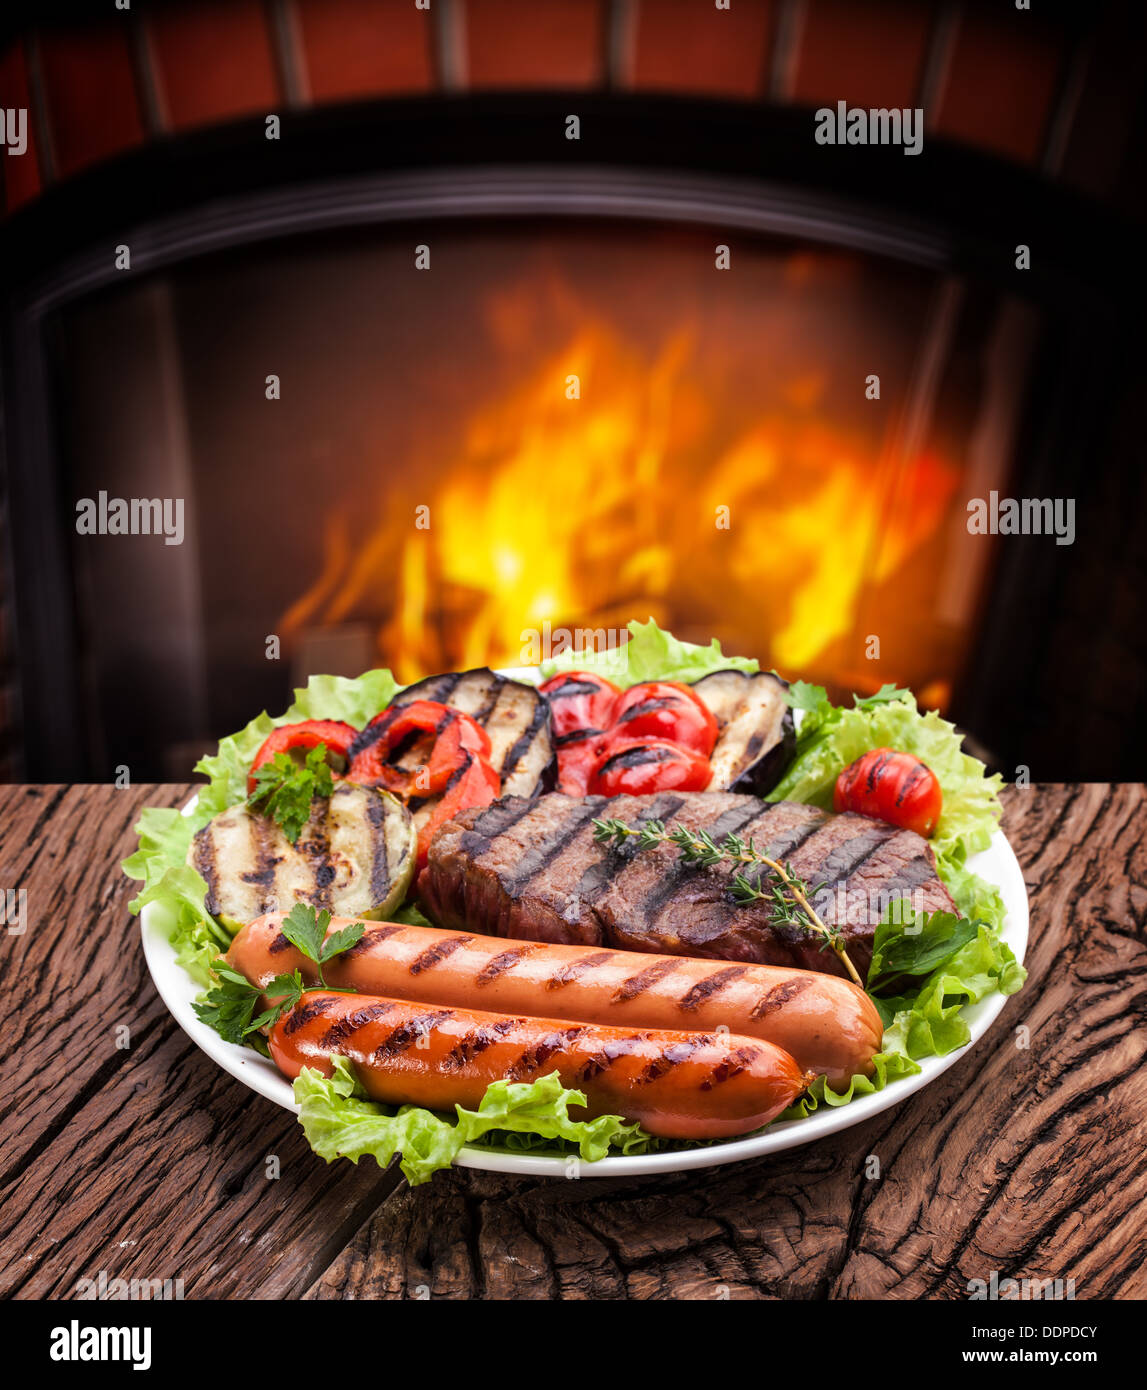 Productos grill: carnes, salchichas y verduras en un plato. Foto de stock